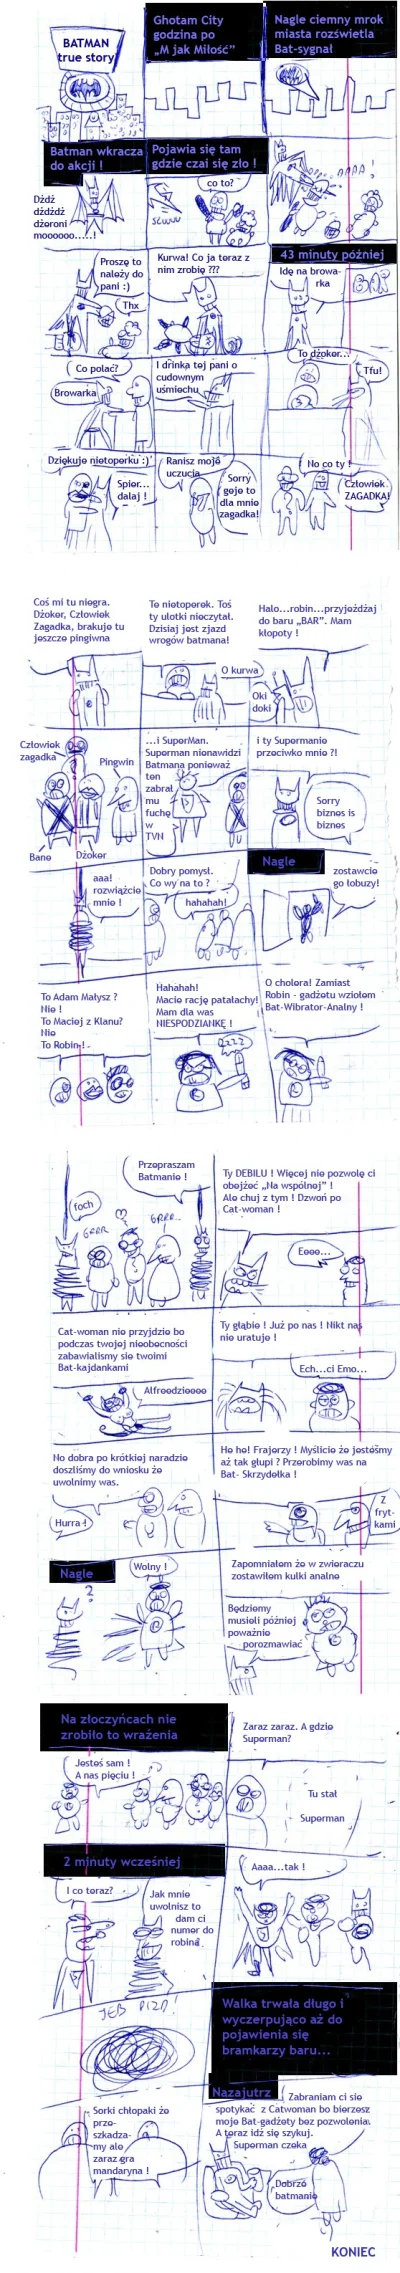 goorskypl - Mój komiks z 2001 roku stworzony na jakiś nudnych zajęciach z czegoś tam ...